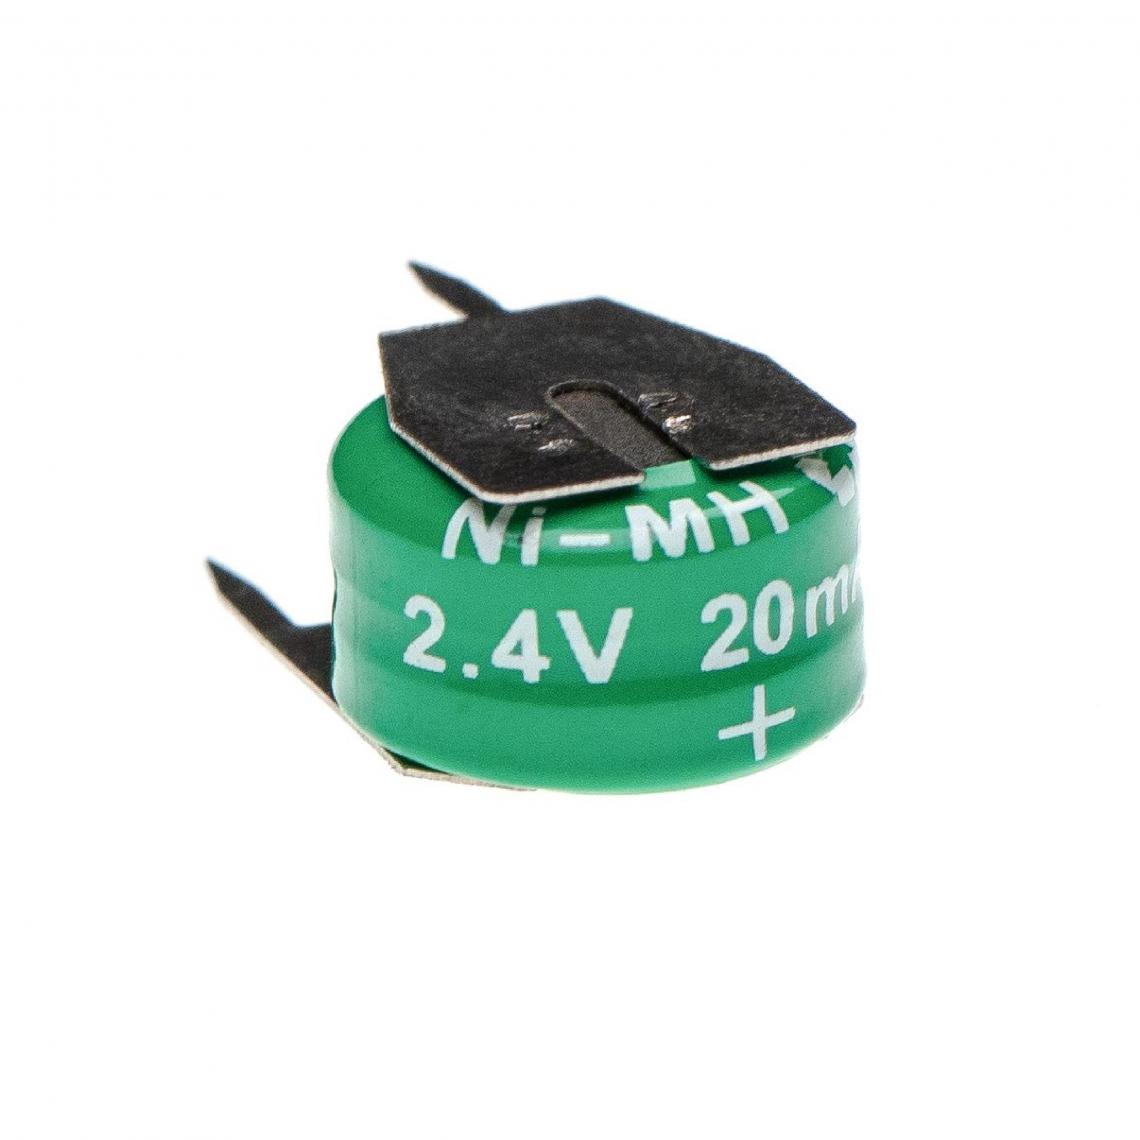 Vhbw - vhbw Batterie remplacement pour 2/V15H pour modèlisme RC (20mAh, 2,4V, NiMH), avec connexion à 3 broches - Autre appareil de mesure